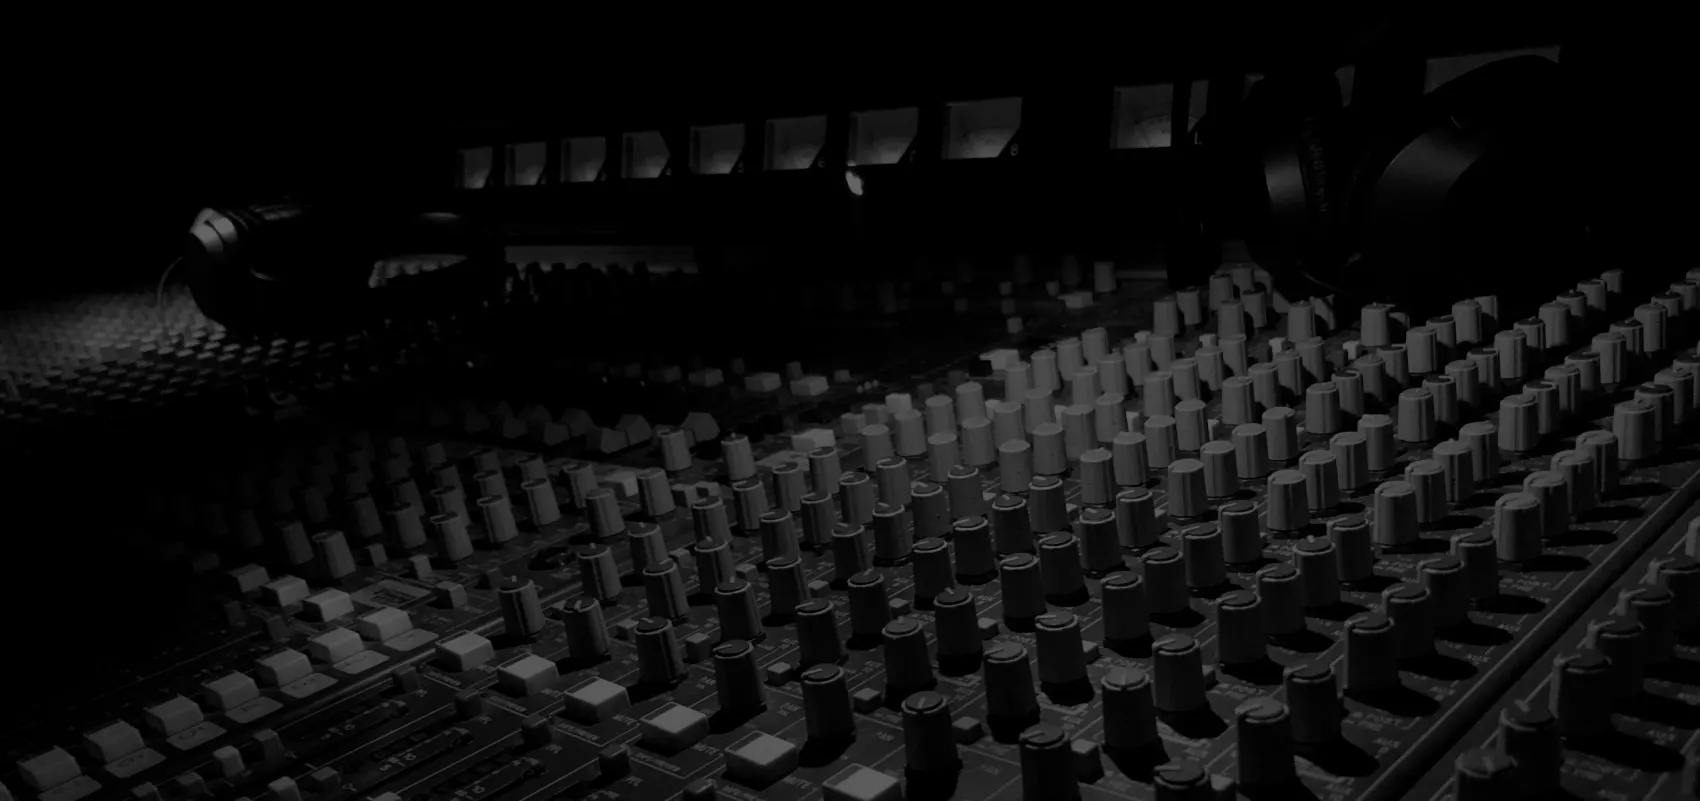 Gros plan en noir et blanc d'une large console d'enregistrement, centre nerveux d'un studio de production musicale